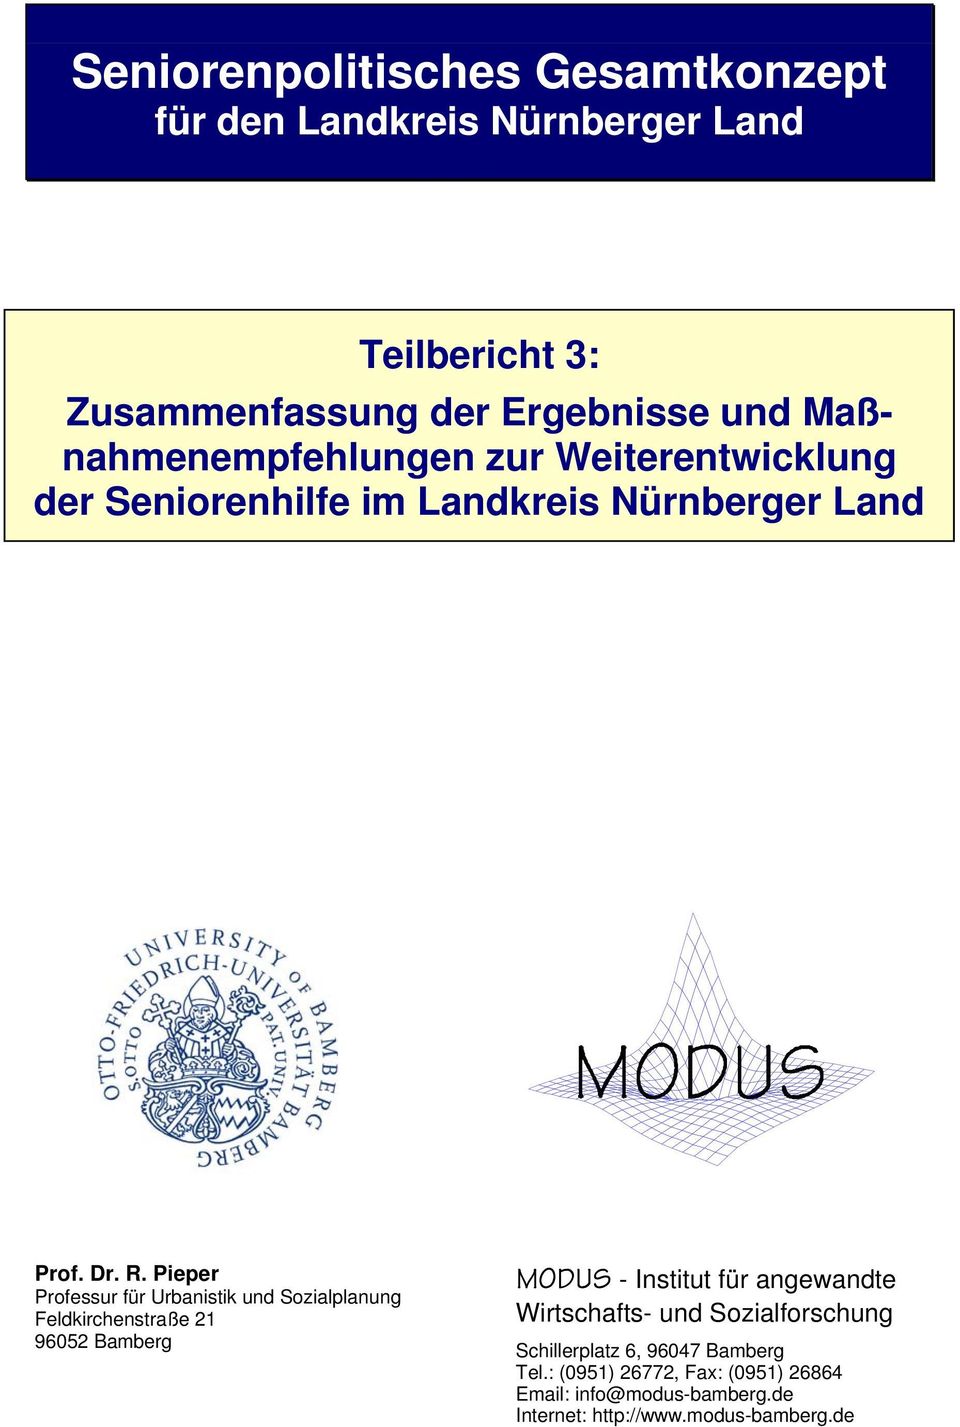 Pieper Professur für Urbanistik und Sozialplanung Feldkirchenstraße 21 96052 Bamberg MODUS - Institut für angewandte